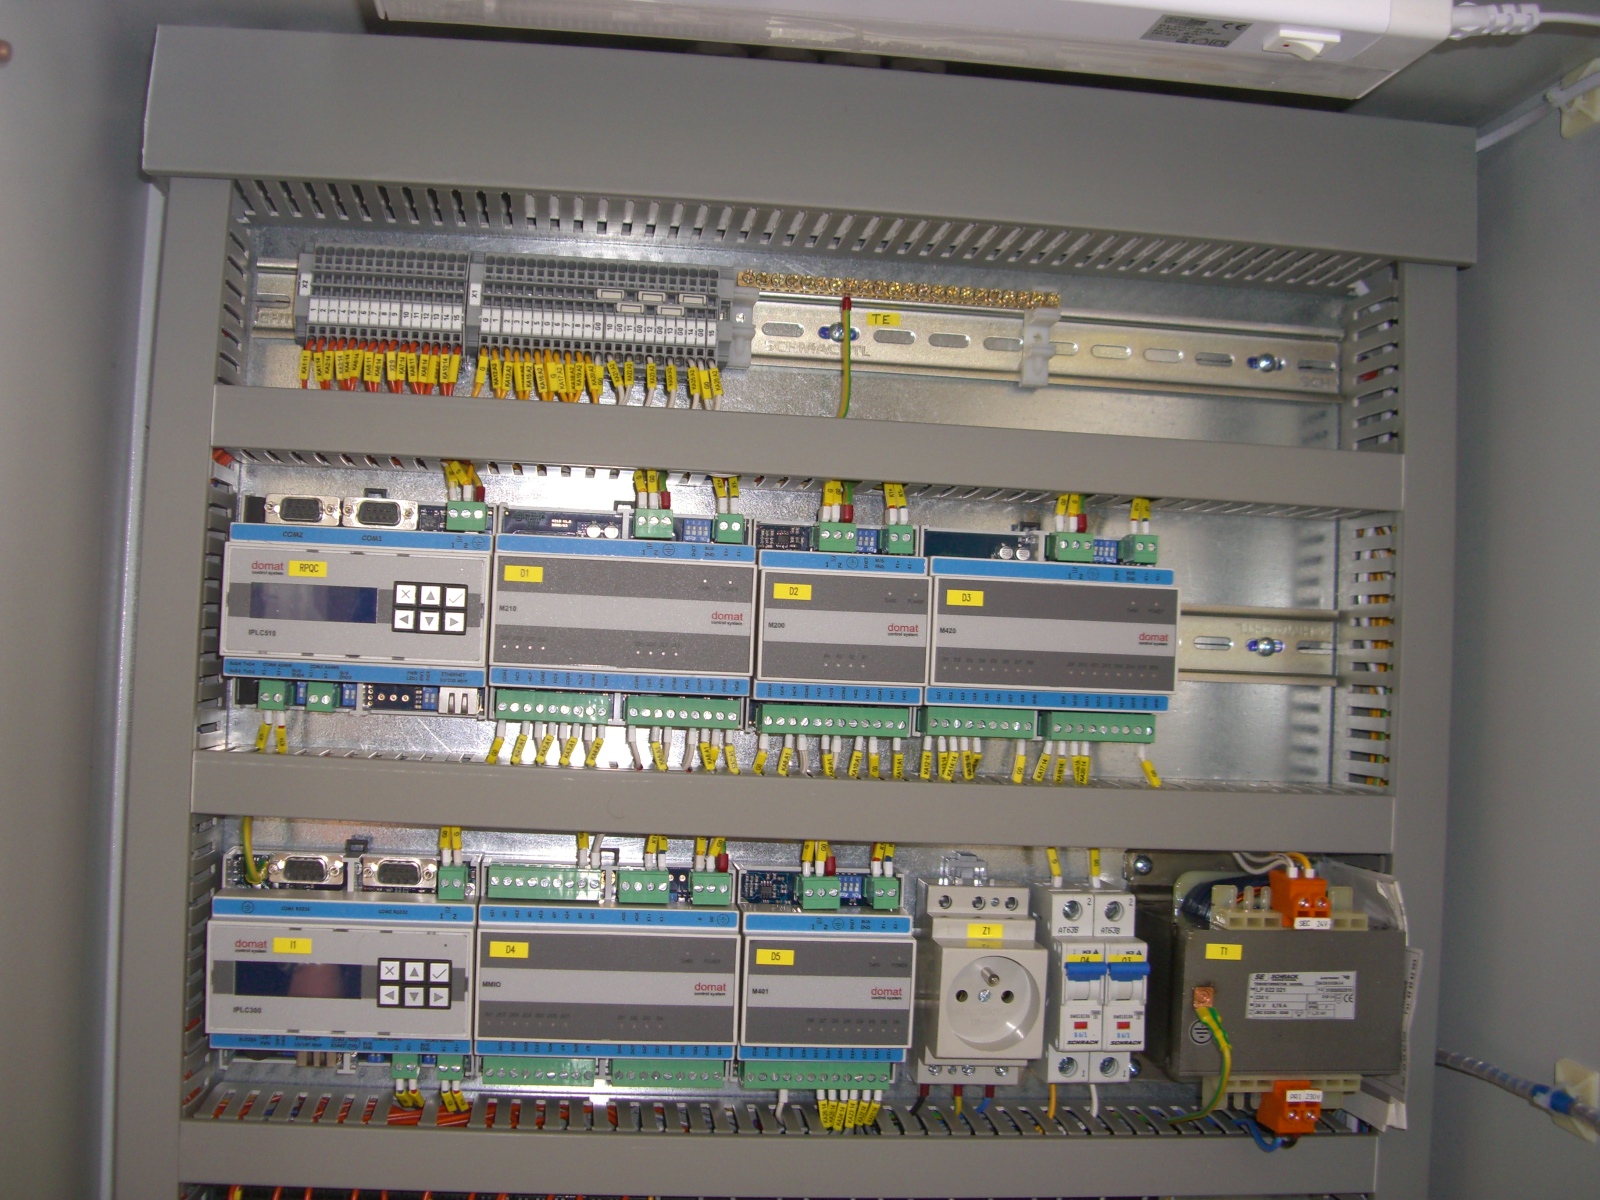 Obr. 5 V horní části u místa pro vstup kabelů do rozvaděče připravená svorkovnice TE (vpravo od svorek)